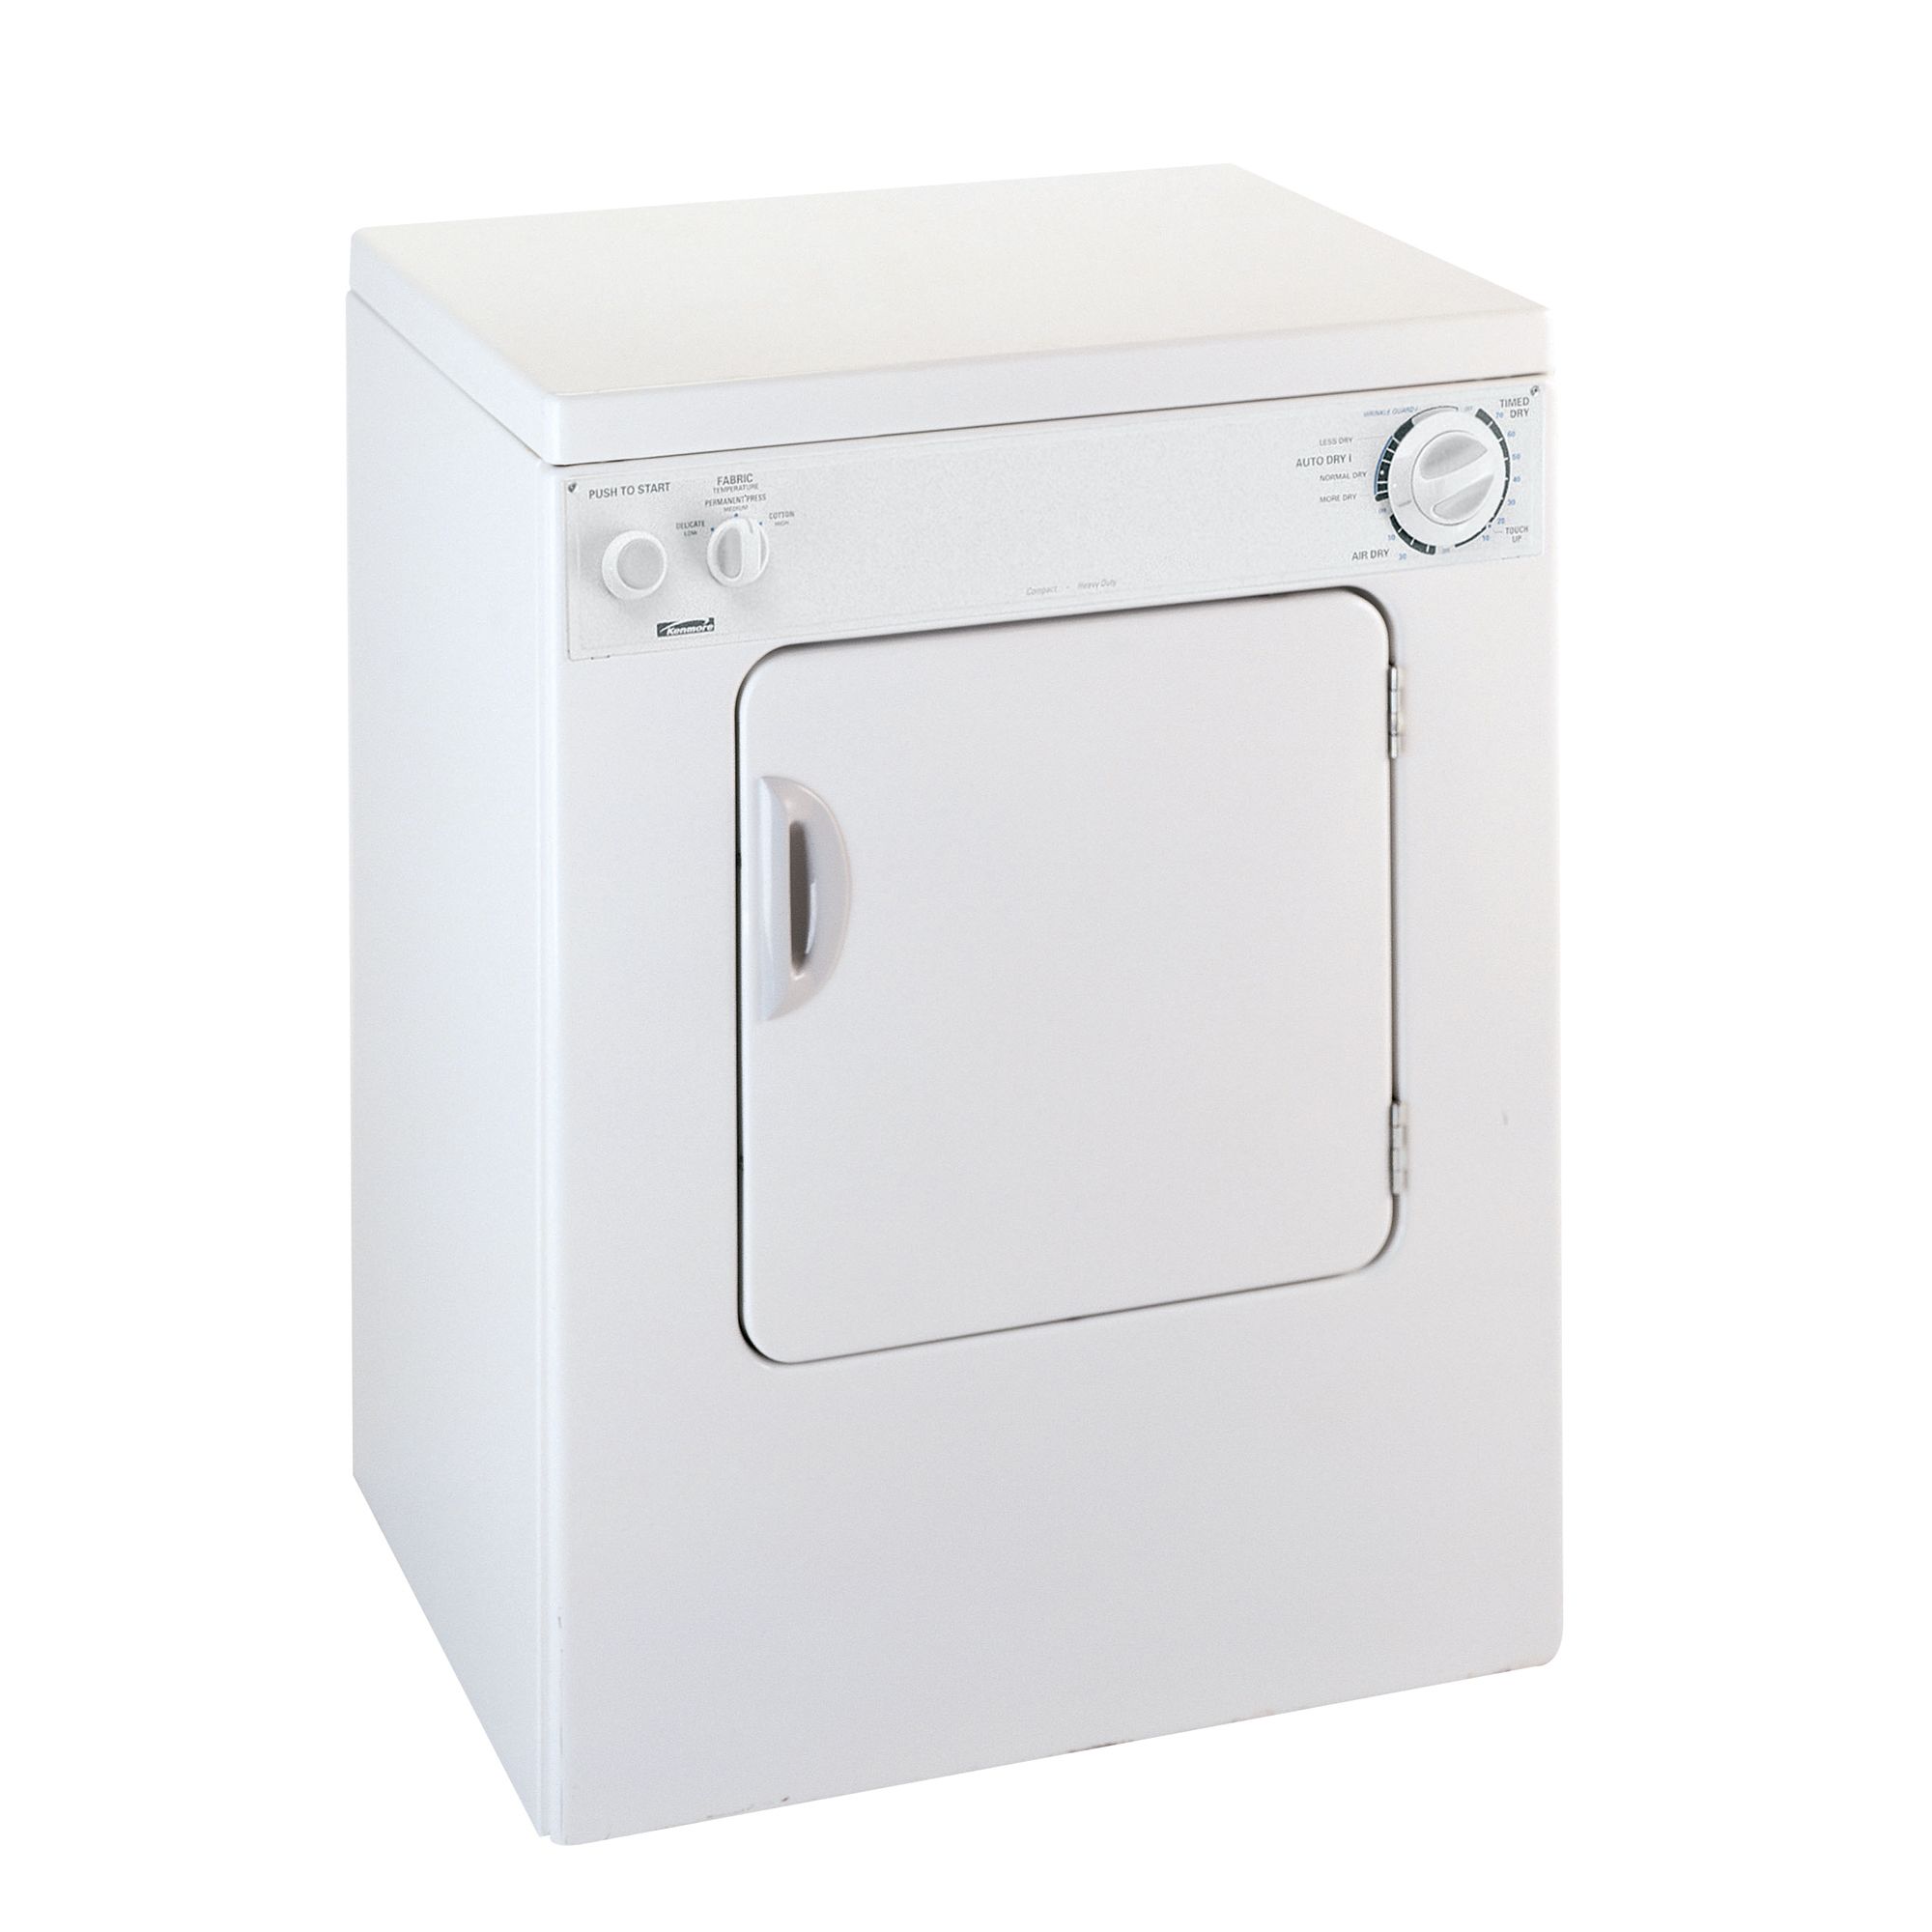 Kenmore 3.4 cu. ft. Compact Stackable Dryer